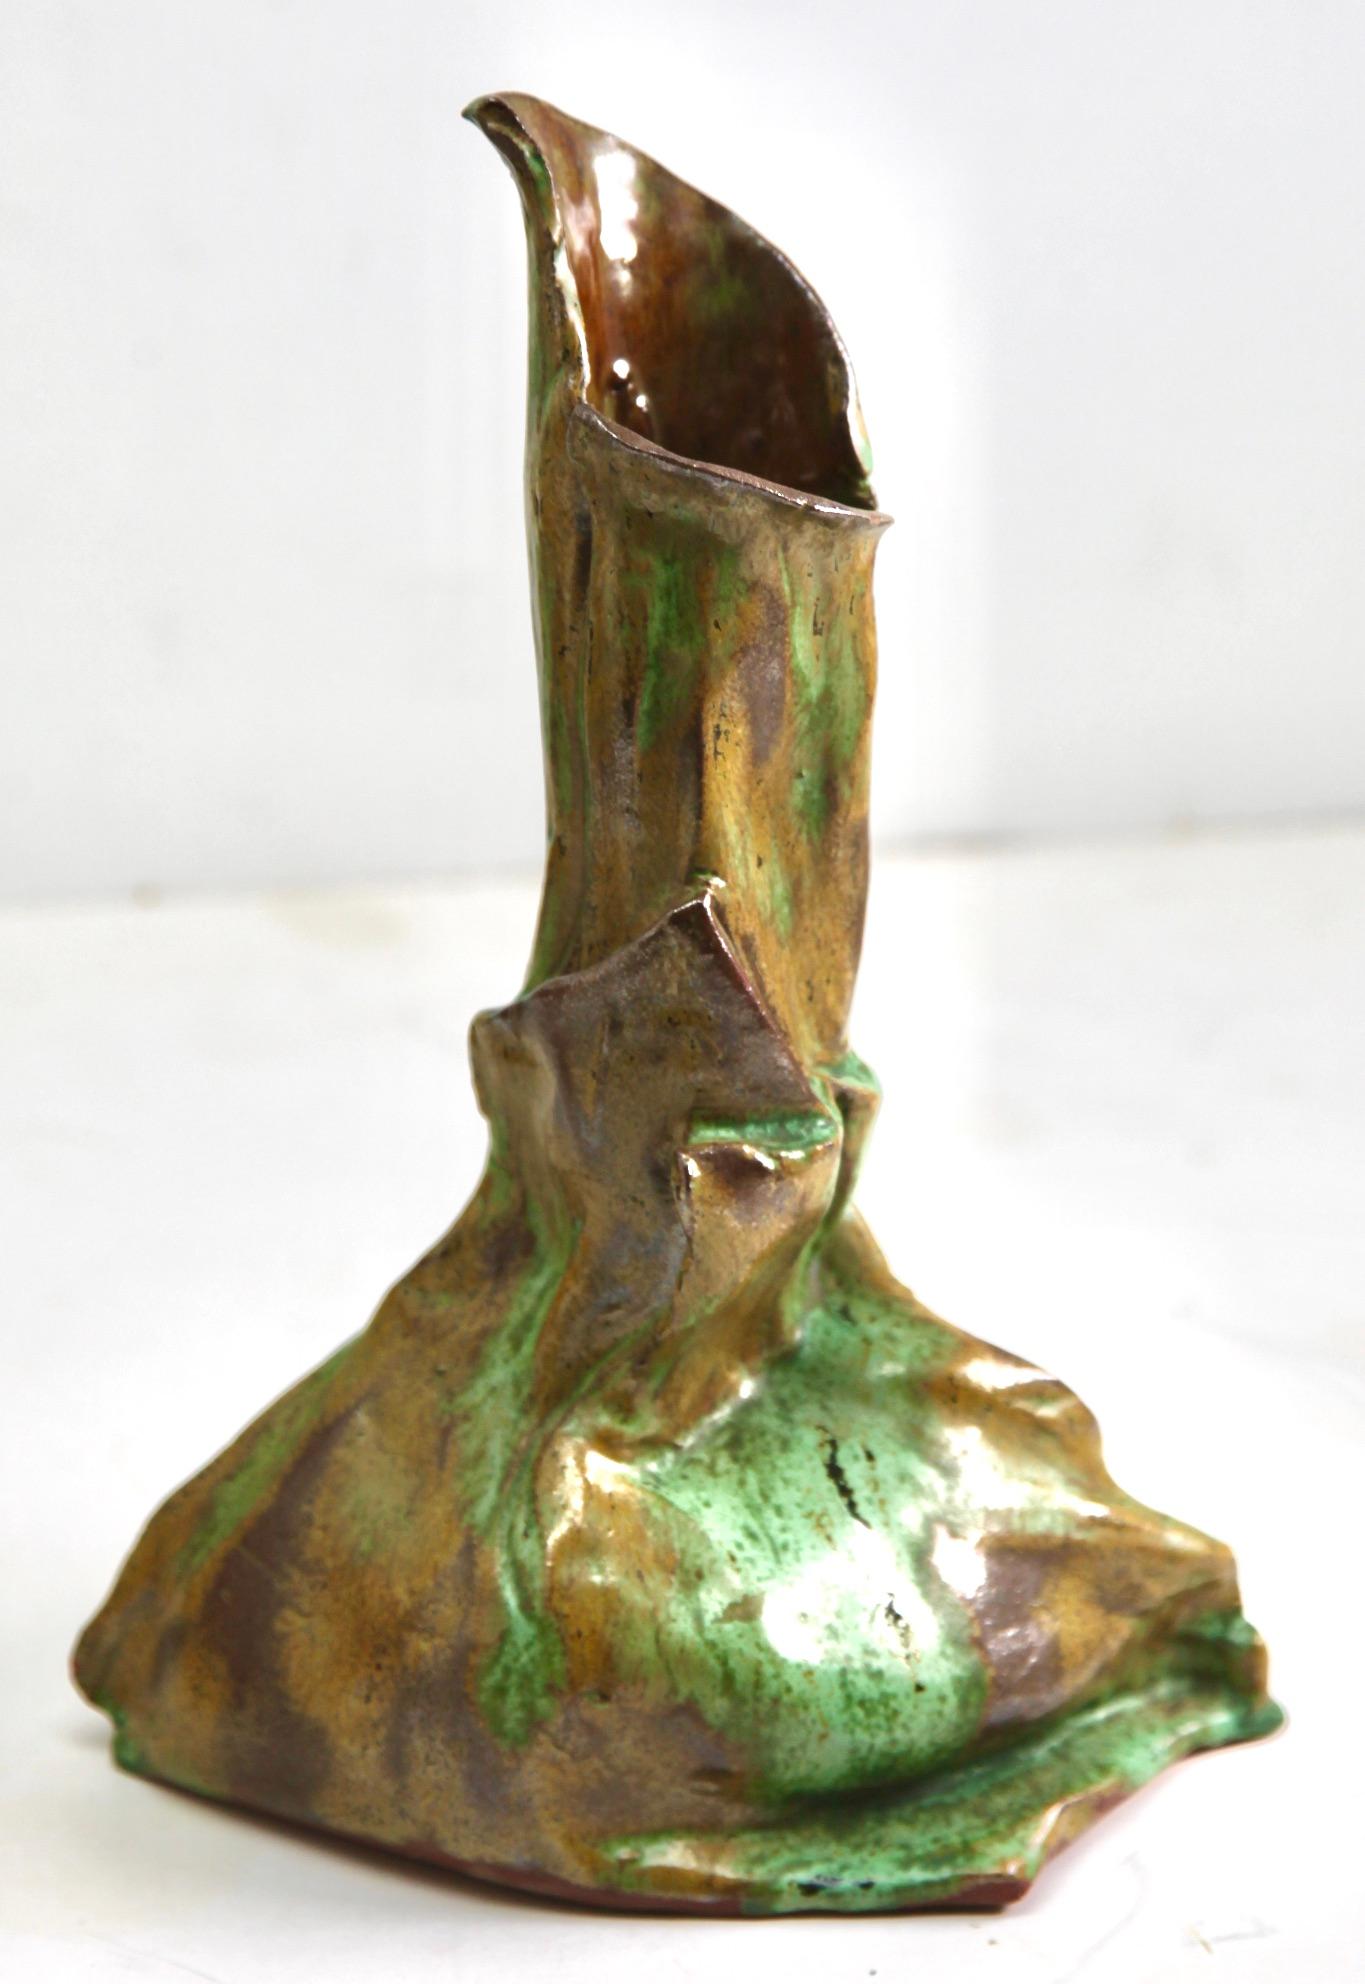 Vase en céramique française, vase-pichet, France, vers 1930
faïence artisanale et émaillée avec des nervures horizontales.
Belle glaçure dans des teintes brunes et vertes
Parfait état.

Nous sommes spécialisés dans les luminaires Art Nouveau,